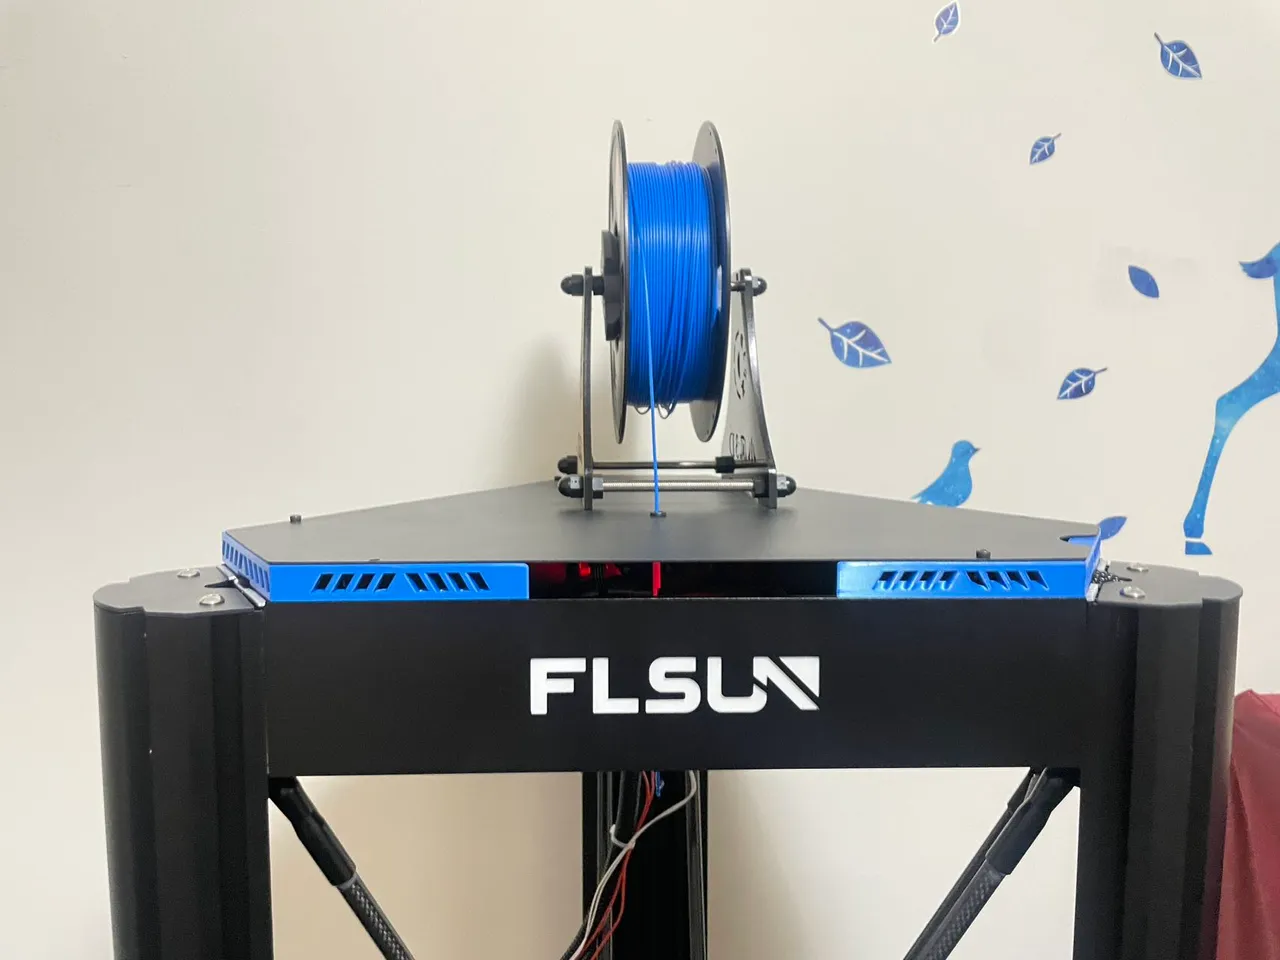 FLSUN V400 Delta printer